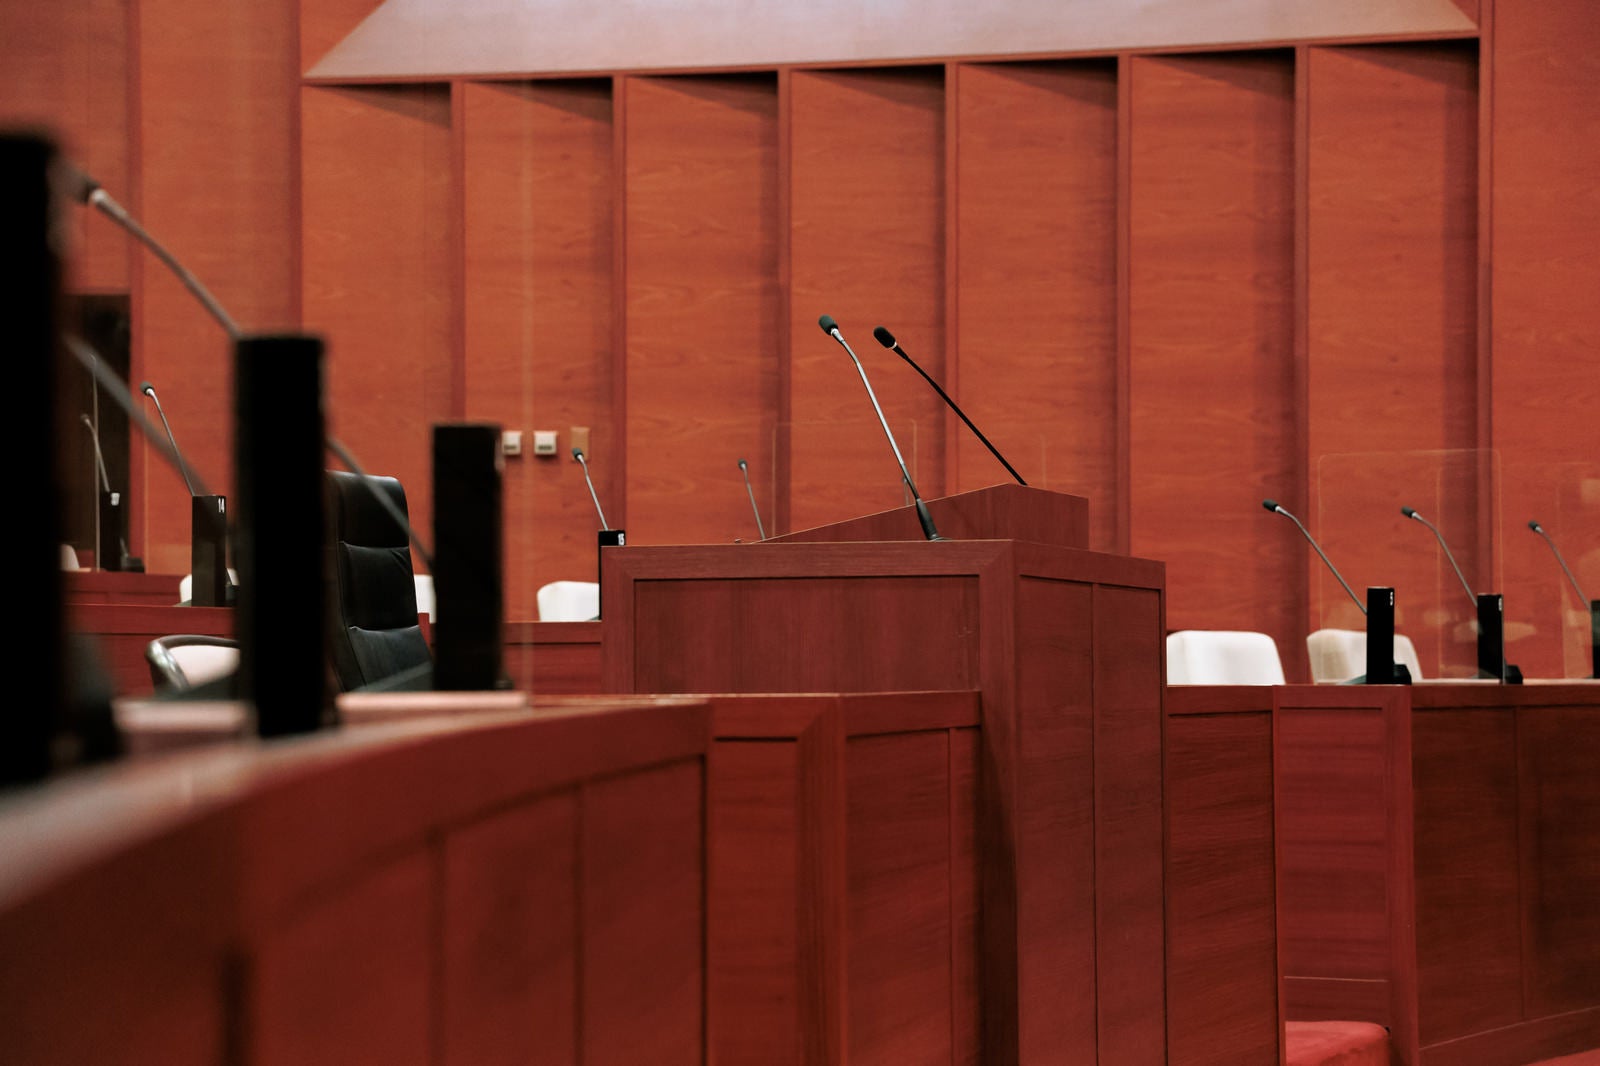 「津山市議会の議場中心部に位置する質問席」の写真